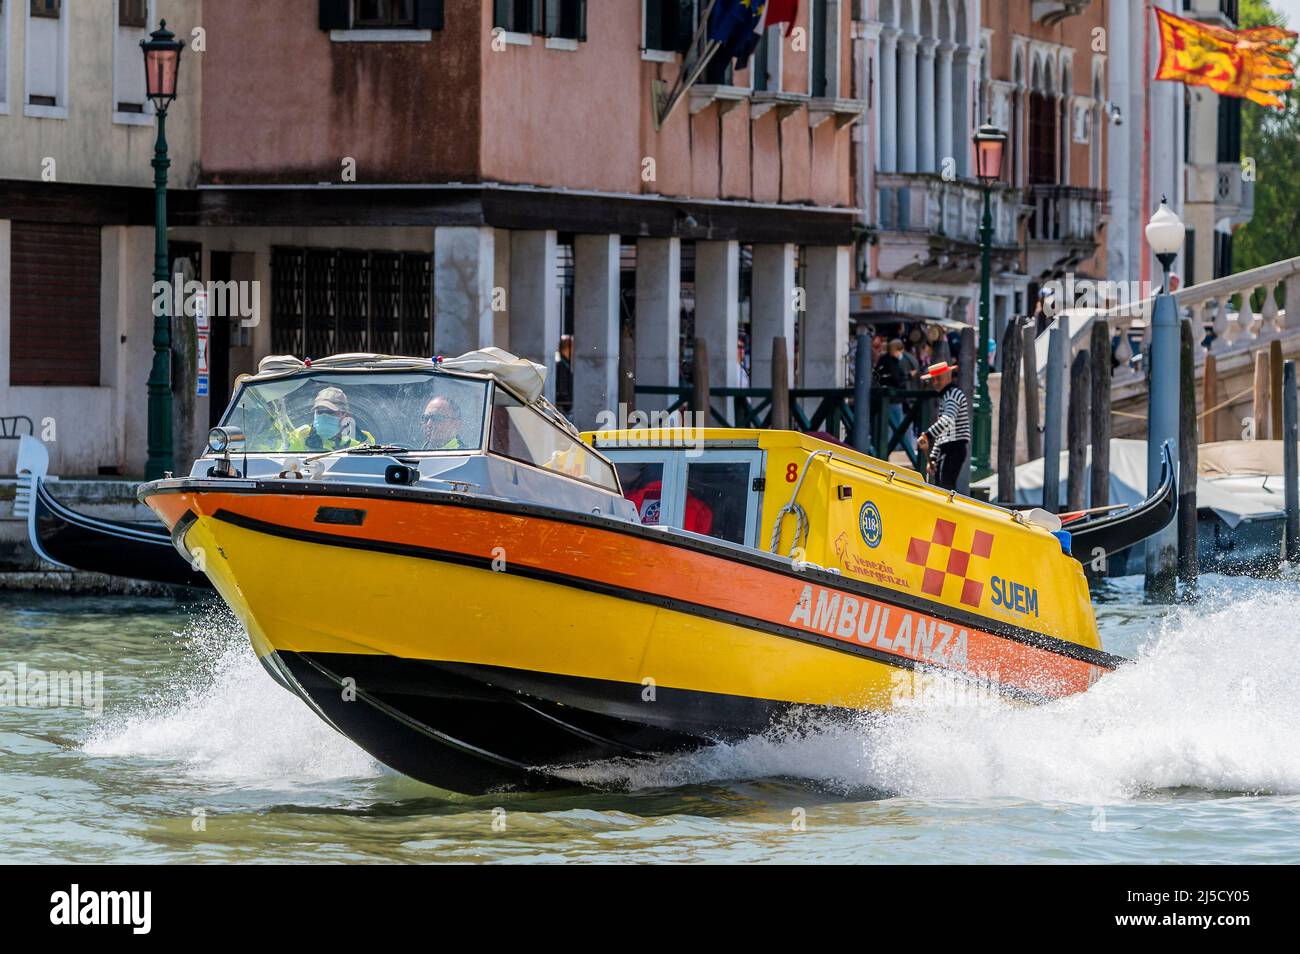 Un ambulance se précipite d'un incident à la gare principale jusqu'à l'hôpital - les canaux sont les artères principales portant toutes les formes de transport d'eau - Venise au début de la Biennale di Venezia en 2022. Banque D'Images